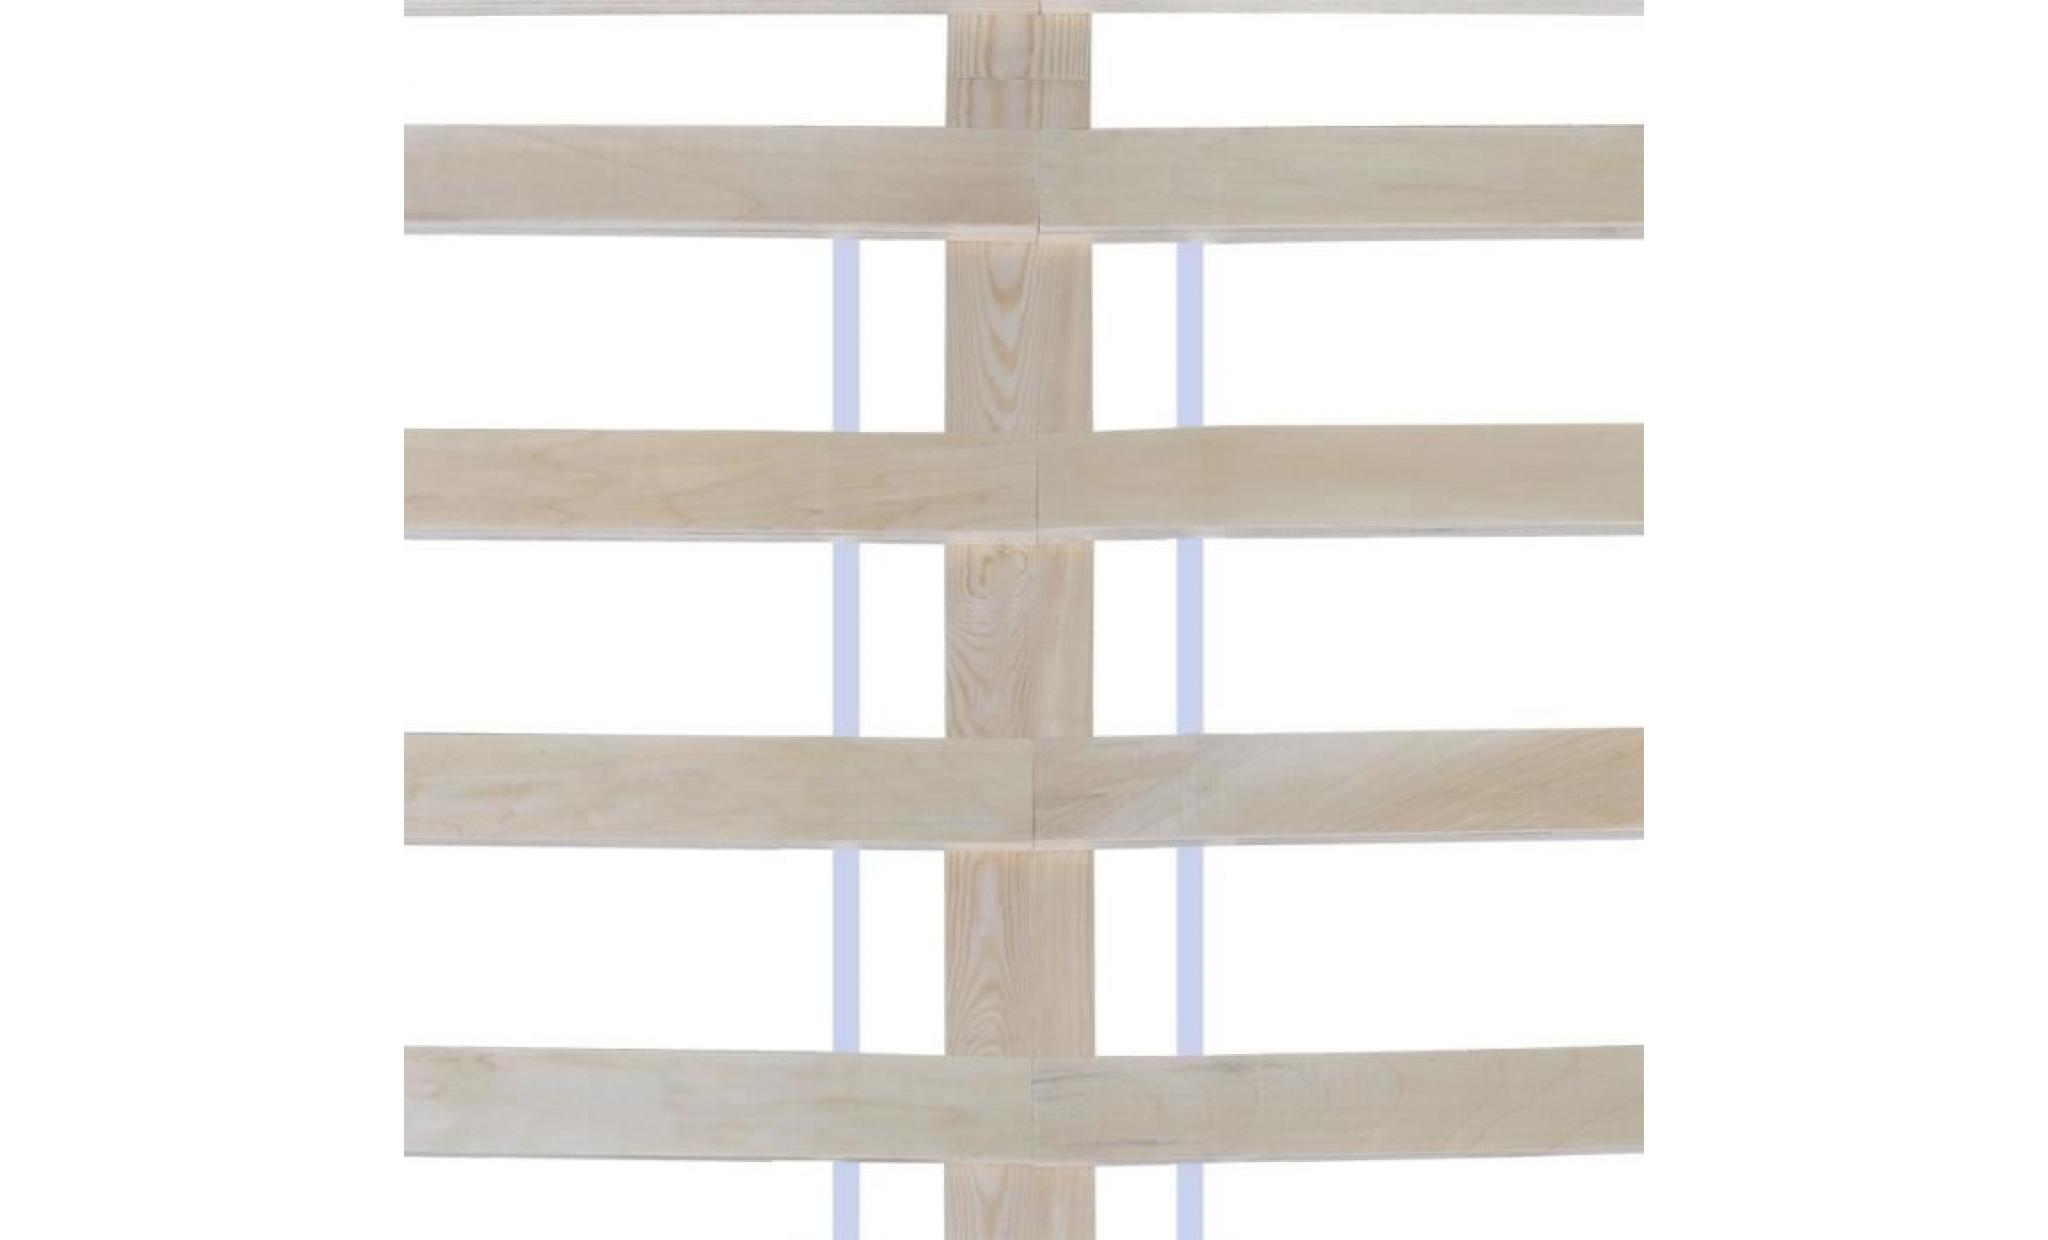 lit bois de pin massif 180 x 200 cm lit adulte lit enfant structure de lit contemporain scandinave blanc pas cher